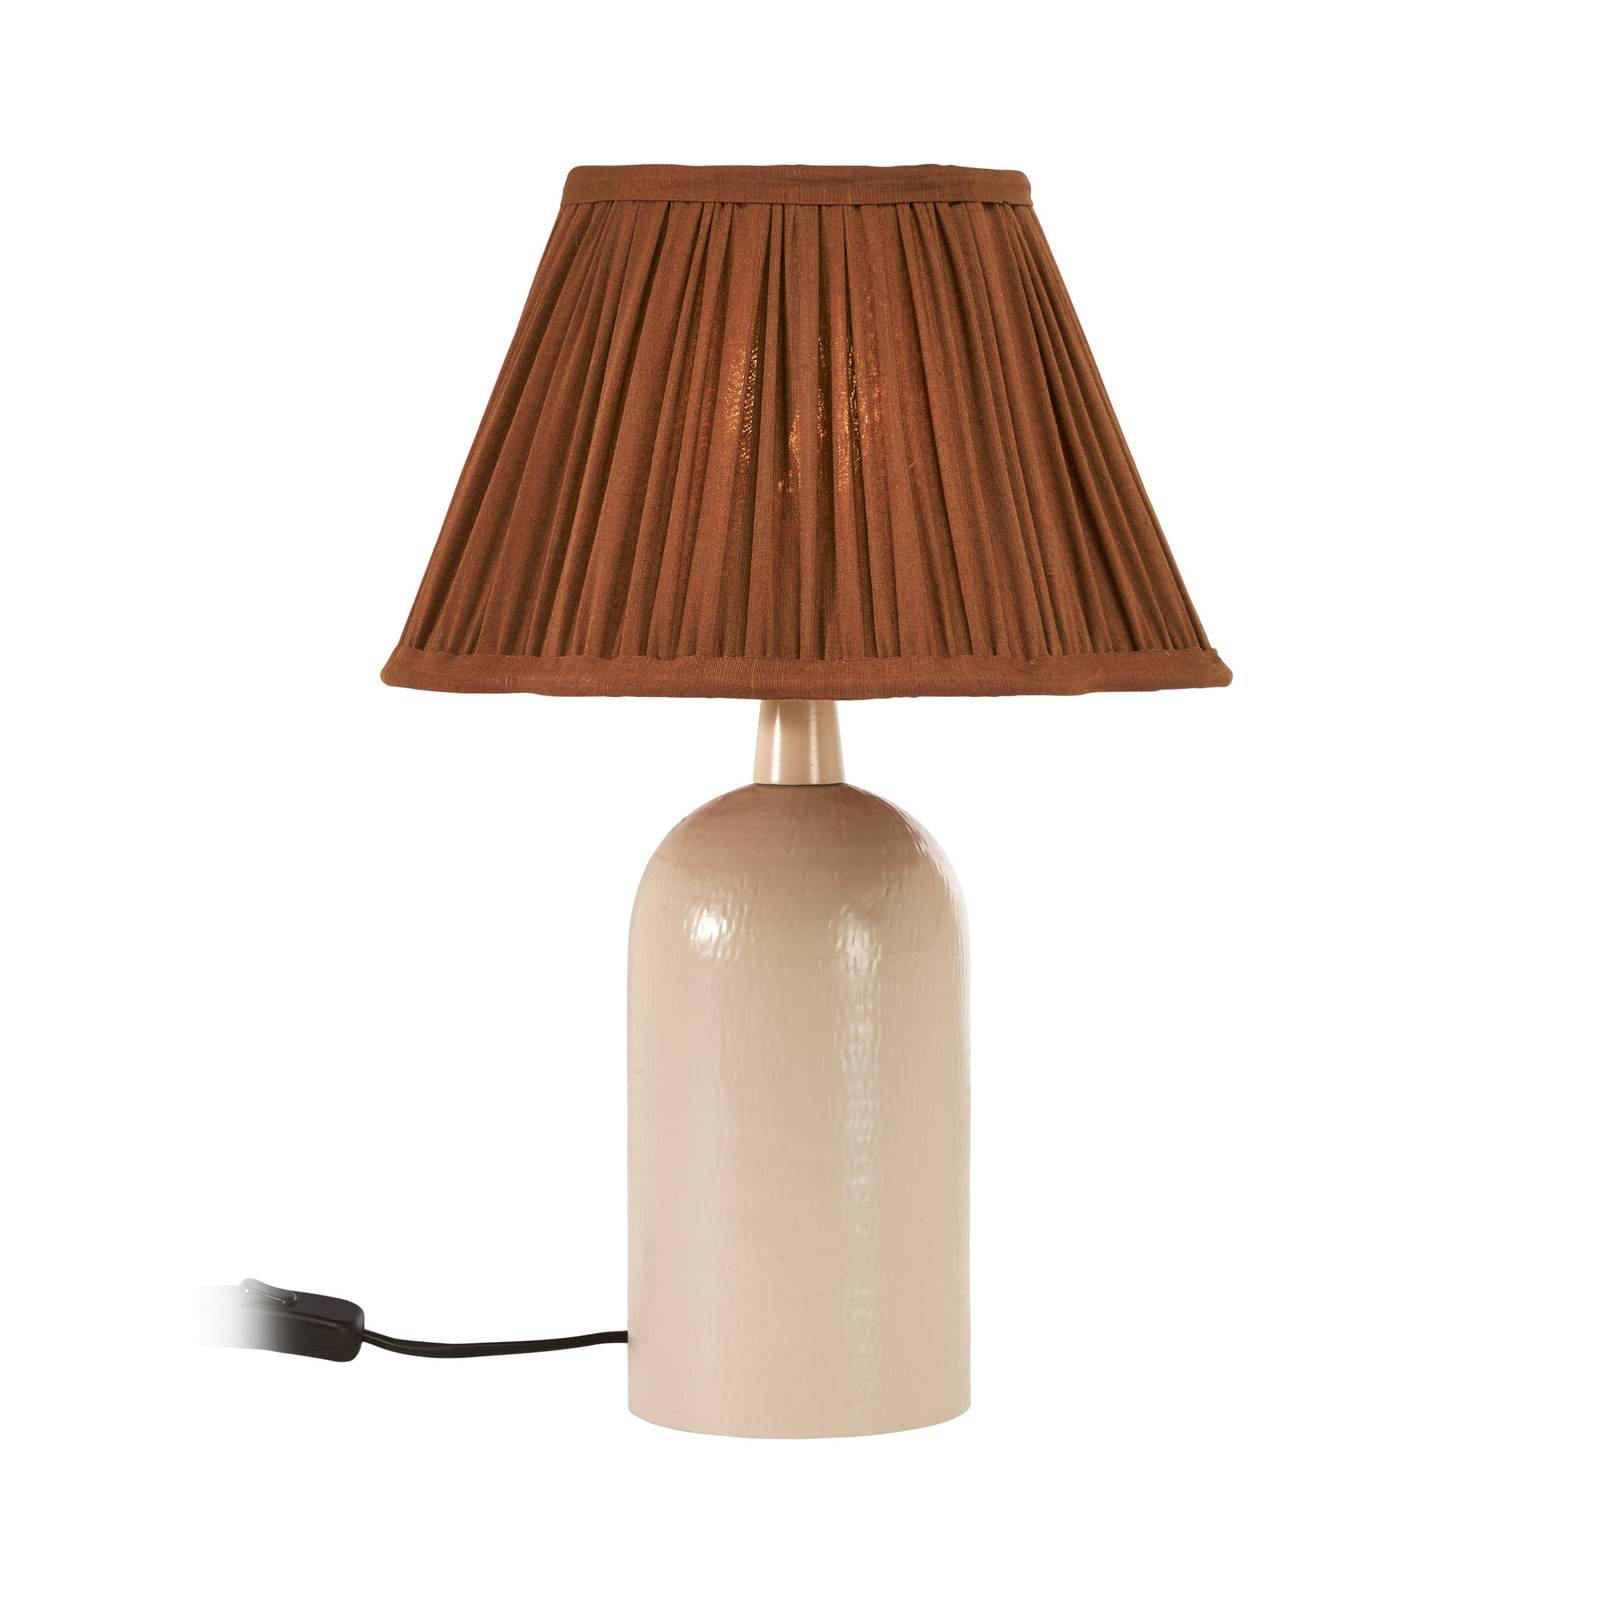 Image of PR Home Riley lampe à poser, beige/brune 7330976137268